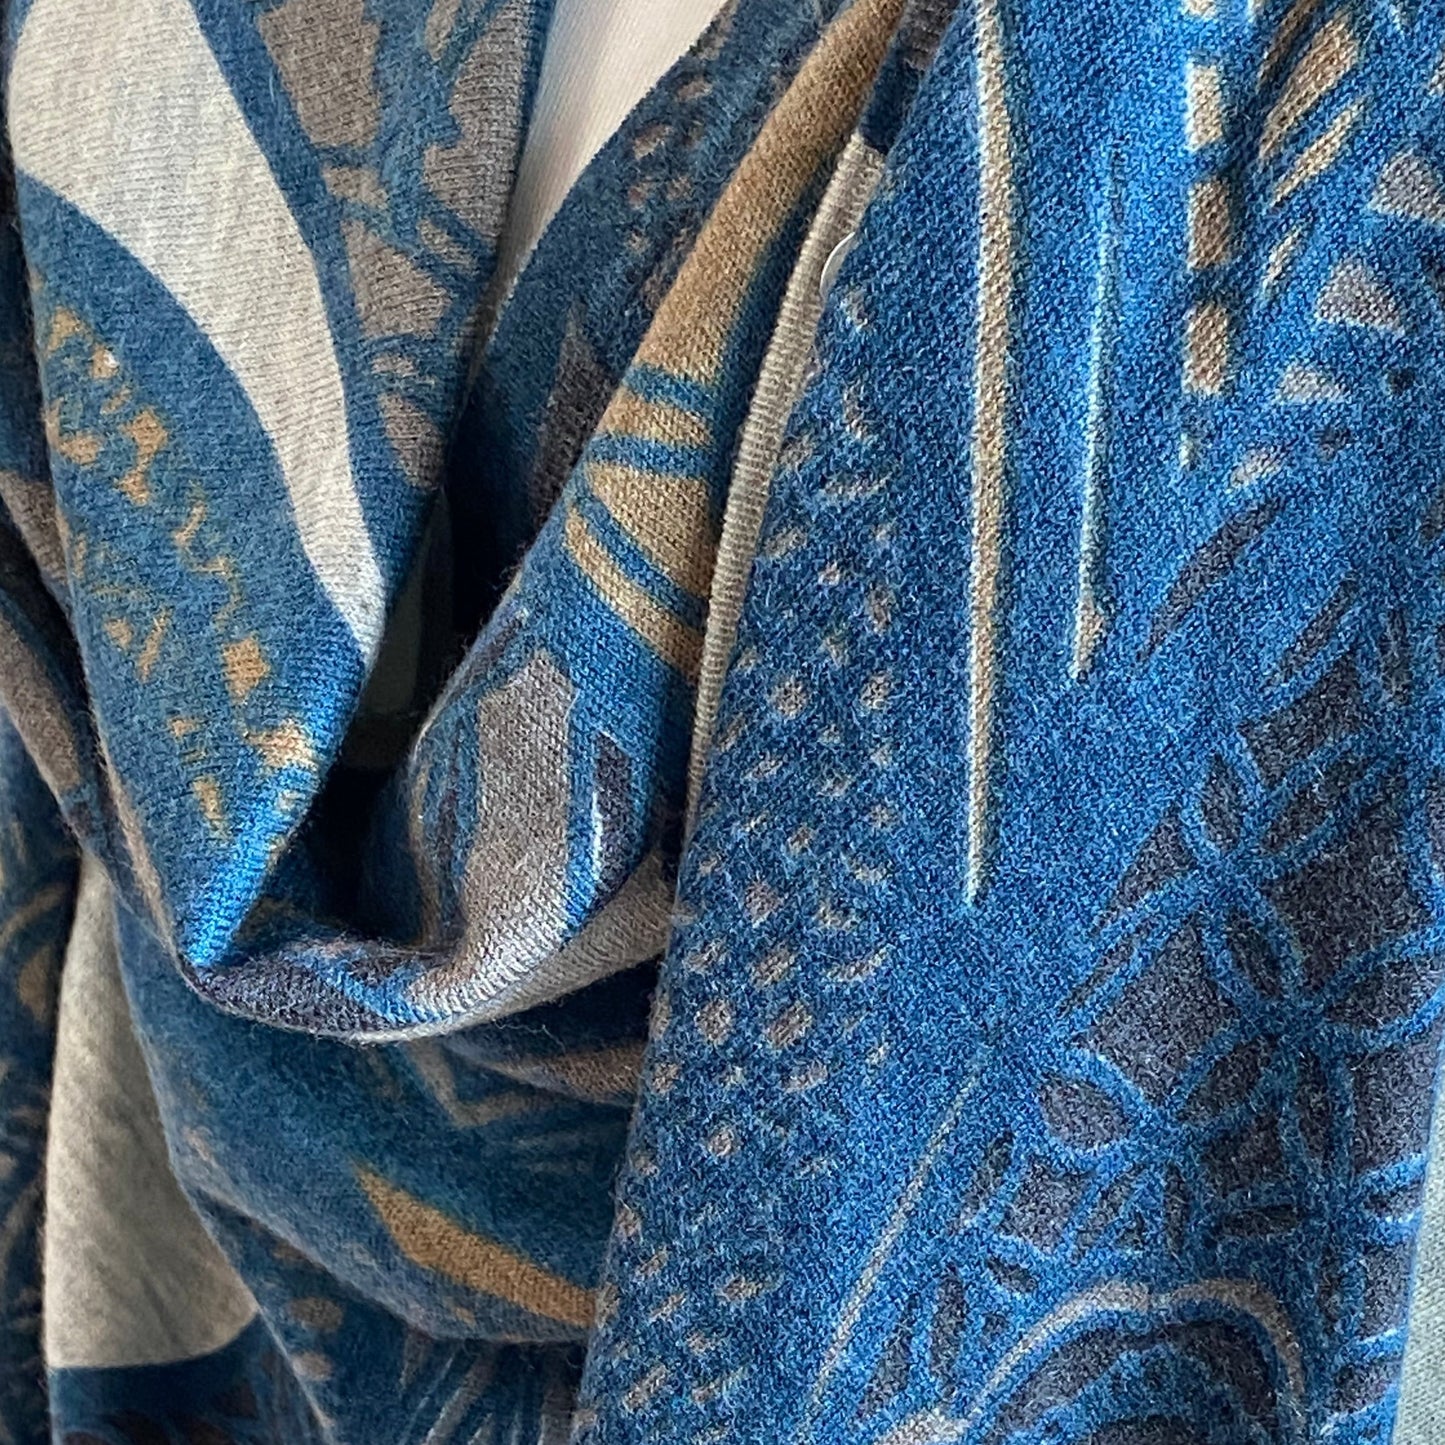 Cashmere stole or dress - SOUL LEAVES 100% cashmere fine knit XL 200x200 - blue petrol &amp; greige